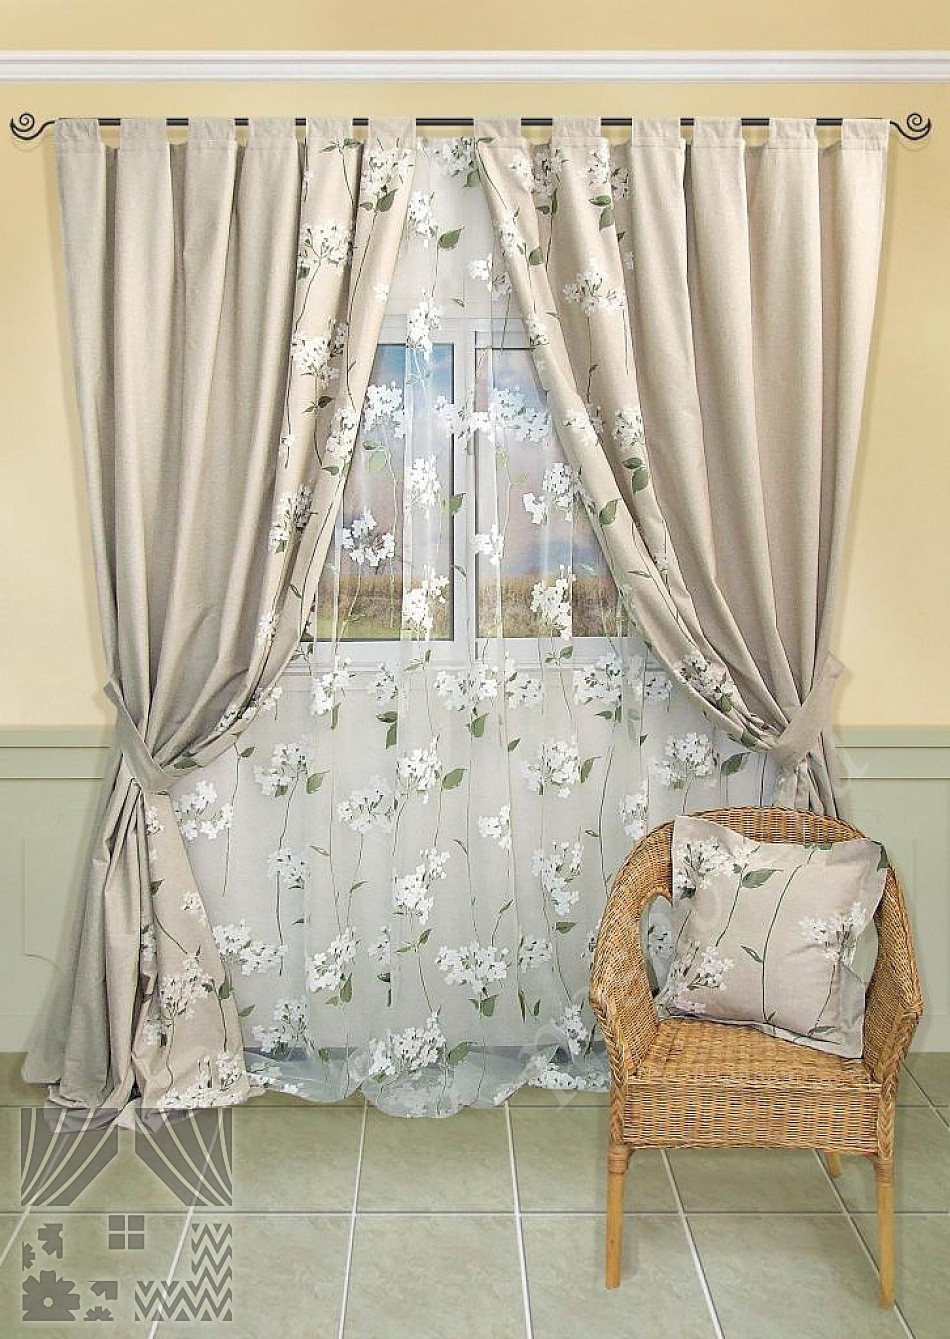 Великолепный комплект готовых штор и тюля с флористической отделкой для гостиной или спальни